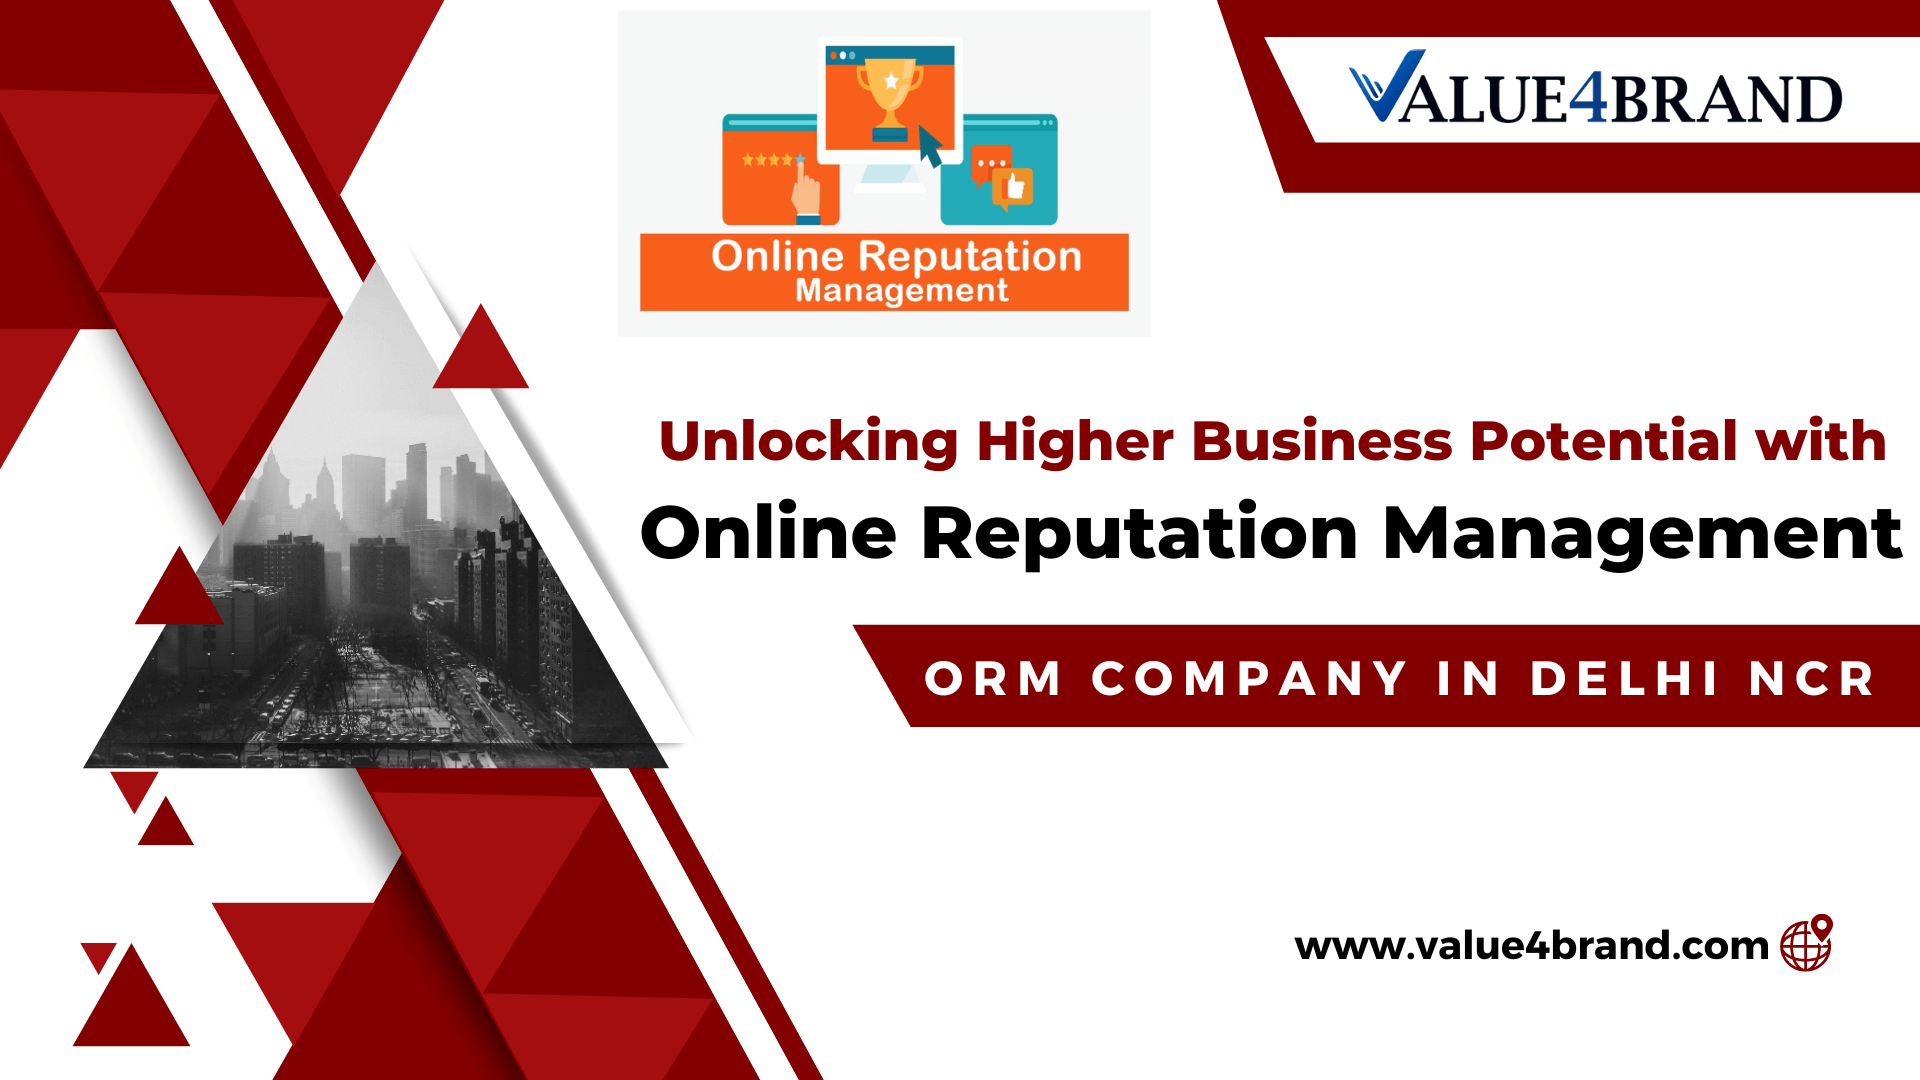 ORM company in Delhi NCR